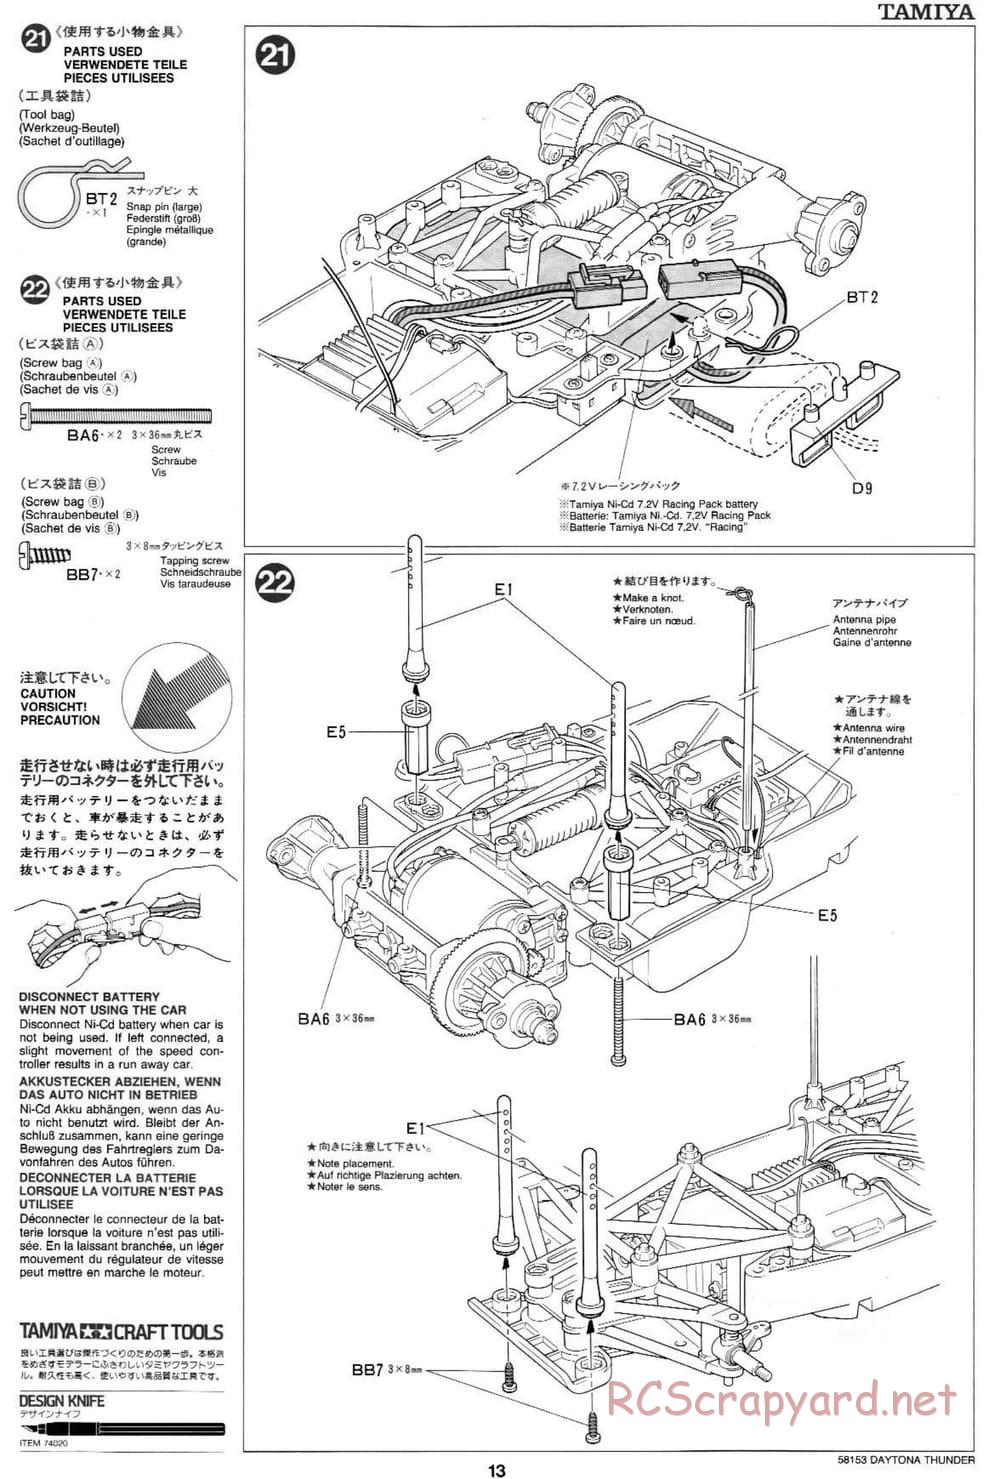 Tamiya - Daytona Thunder - Group-C Chassis - Manual - Page 13